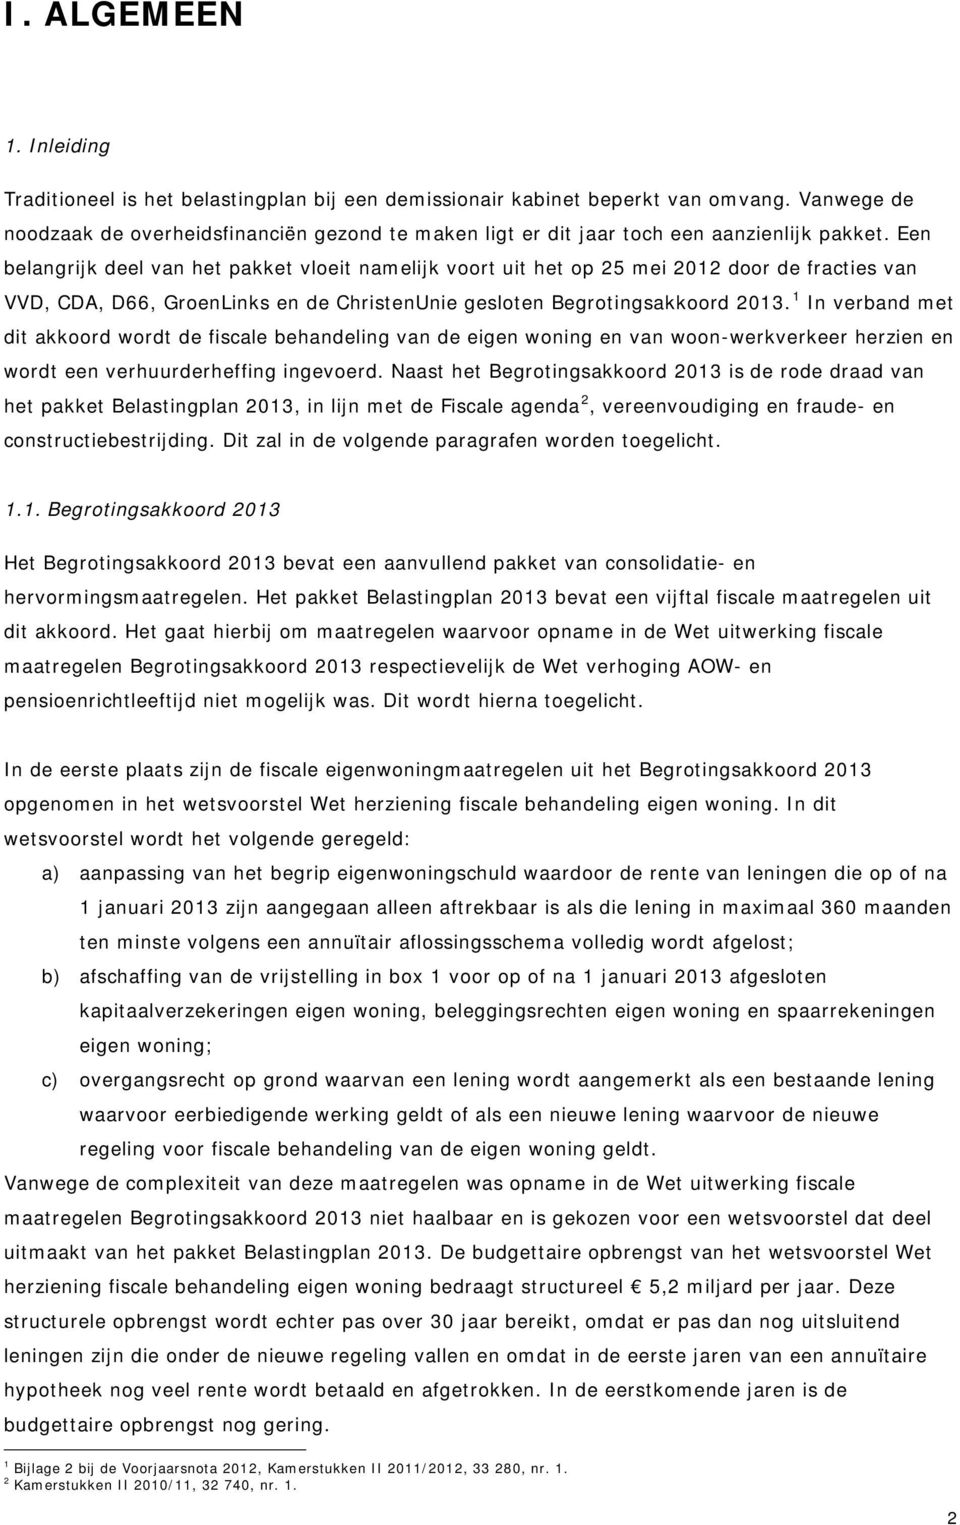 Een belangrijk deel van het pakket vloeit namelijk voort uit het op 25 mei 2012 door de fracties van VVD, CDA, D66, GroenLinks en de ChristenUnie gesloten Begrotingsakkoord 2013.